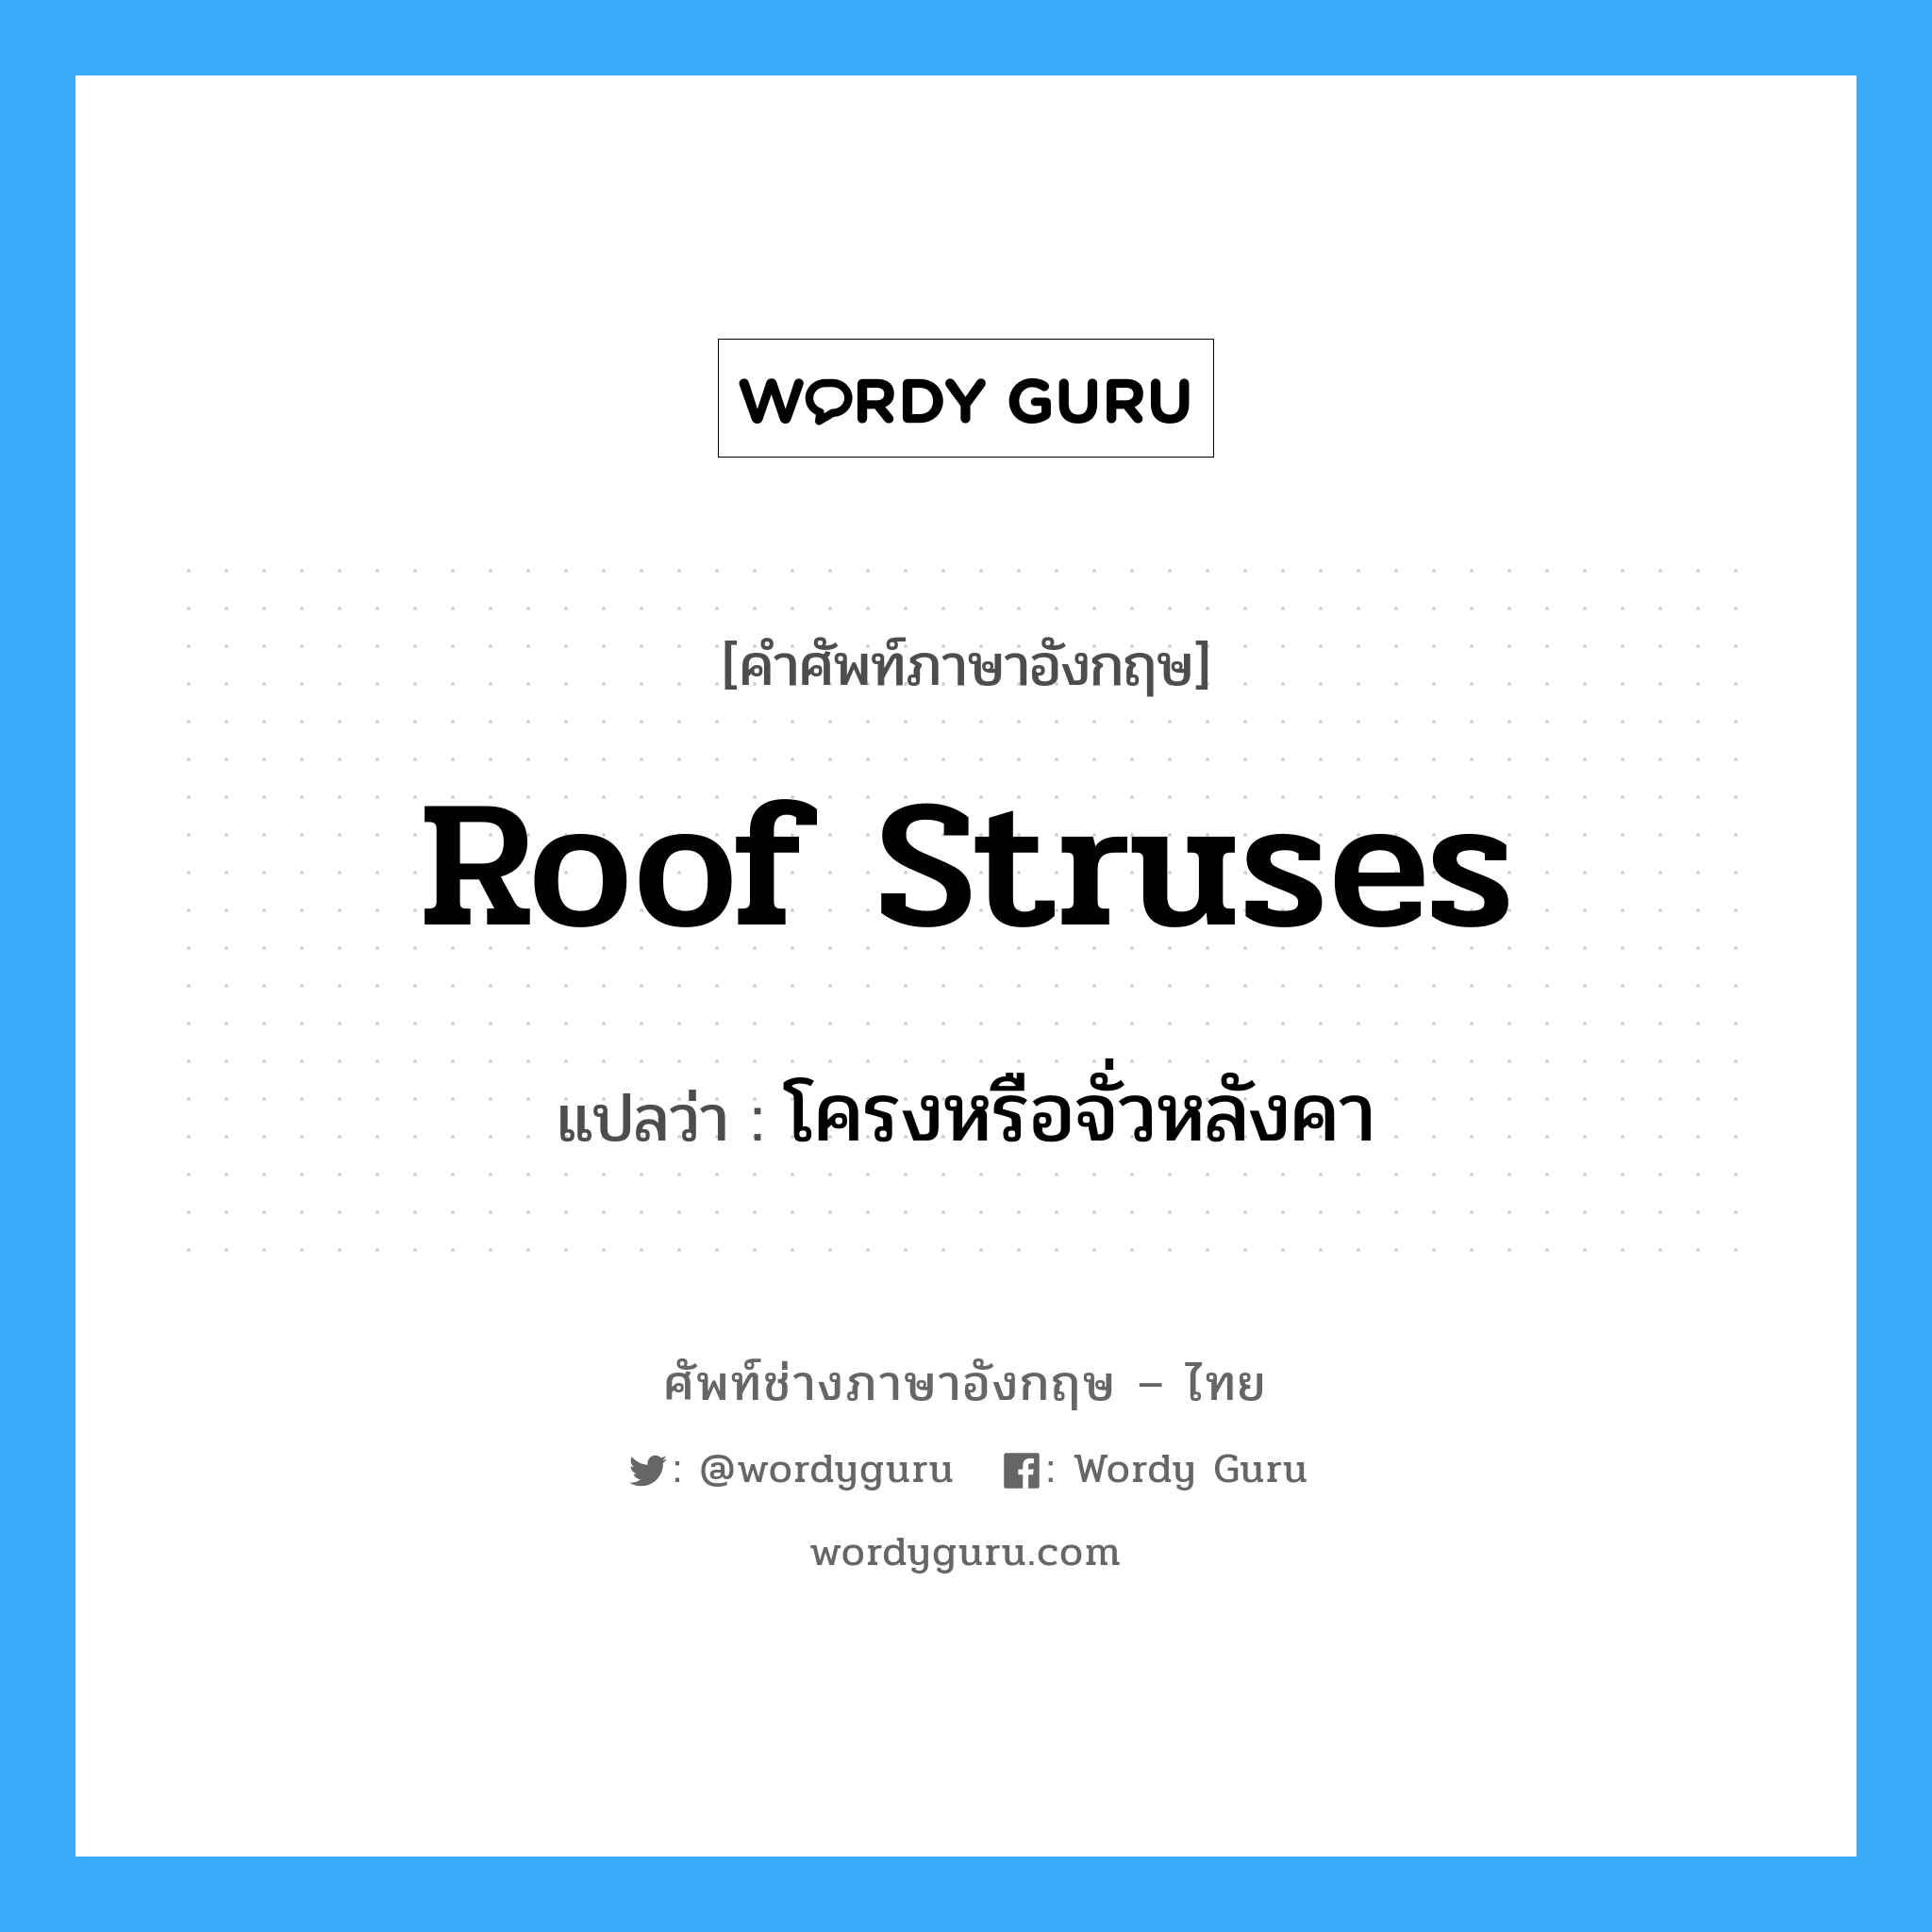 โครงหรือจั่วหลังคา ภาษาอังกฤษ?, คำศัพท์ช่างภาษาอังกฤษ - ไทย โครงหรือจั่วหลังคา คำศัพท์ภาษาอังกฤษ โครงหรือจั่วหลังคา แปลว่า roof struses